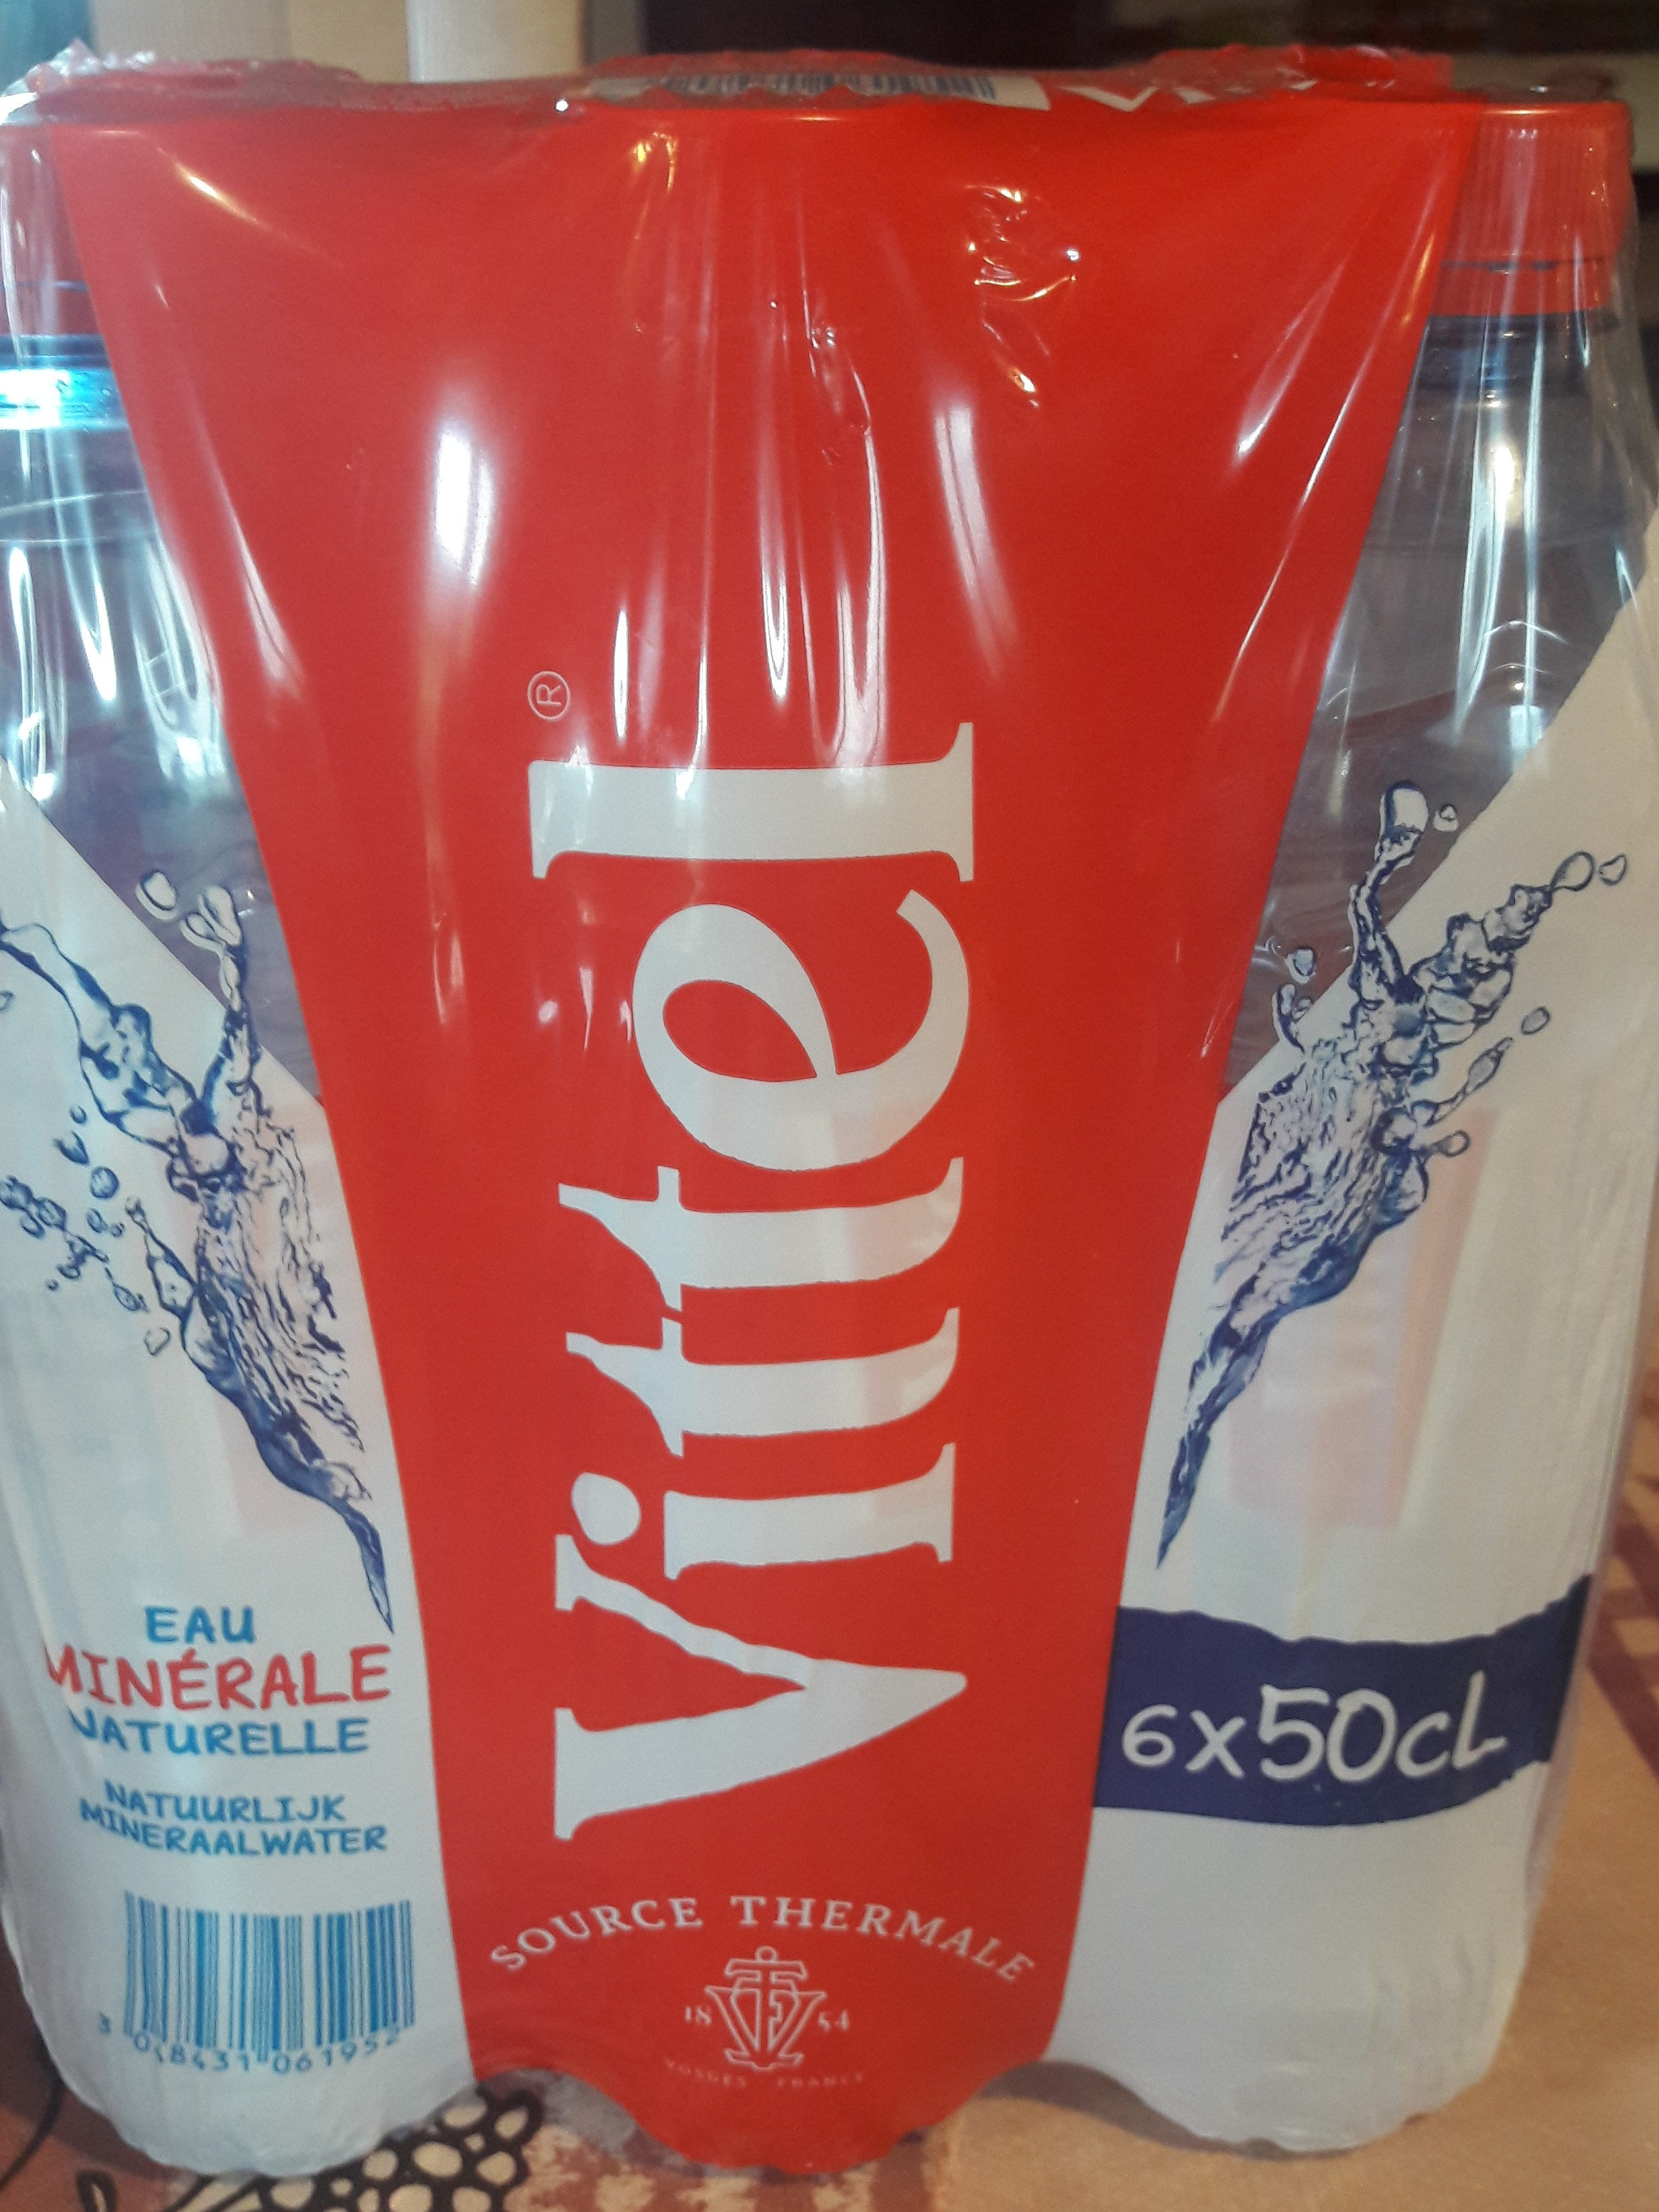 VITTEL eau minérale naturelle 6 x 50cl - Ingrediënten - fr